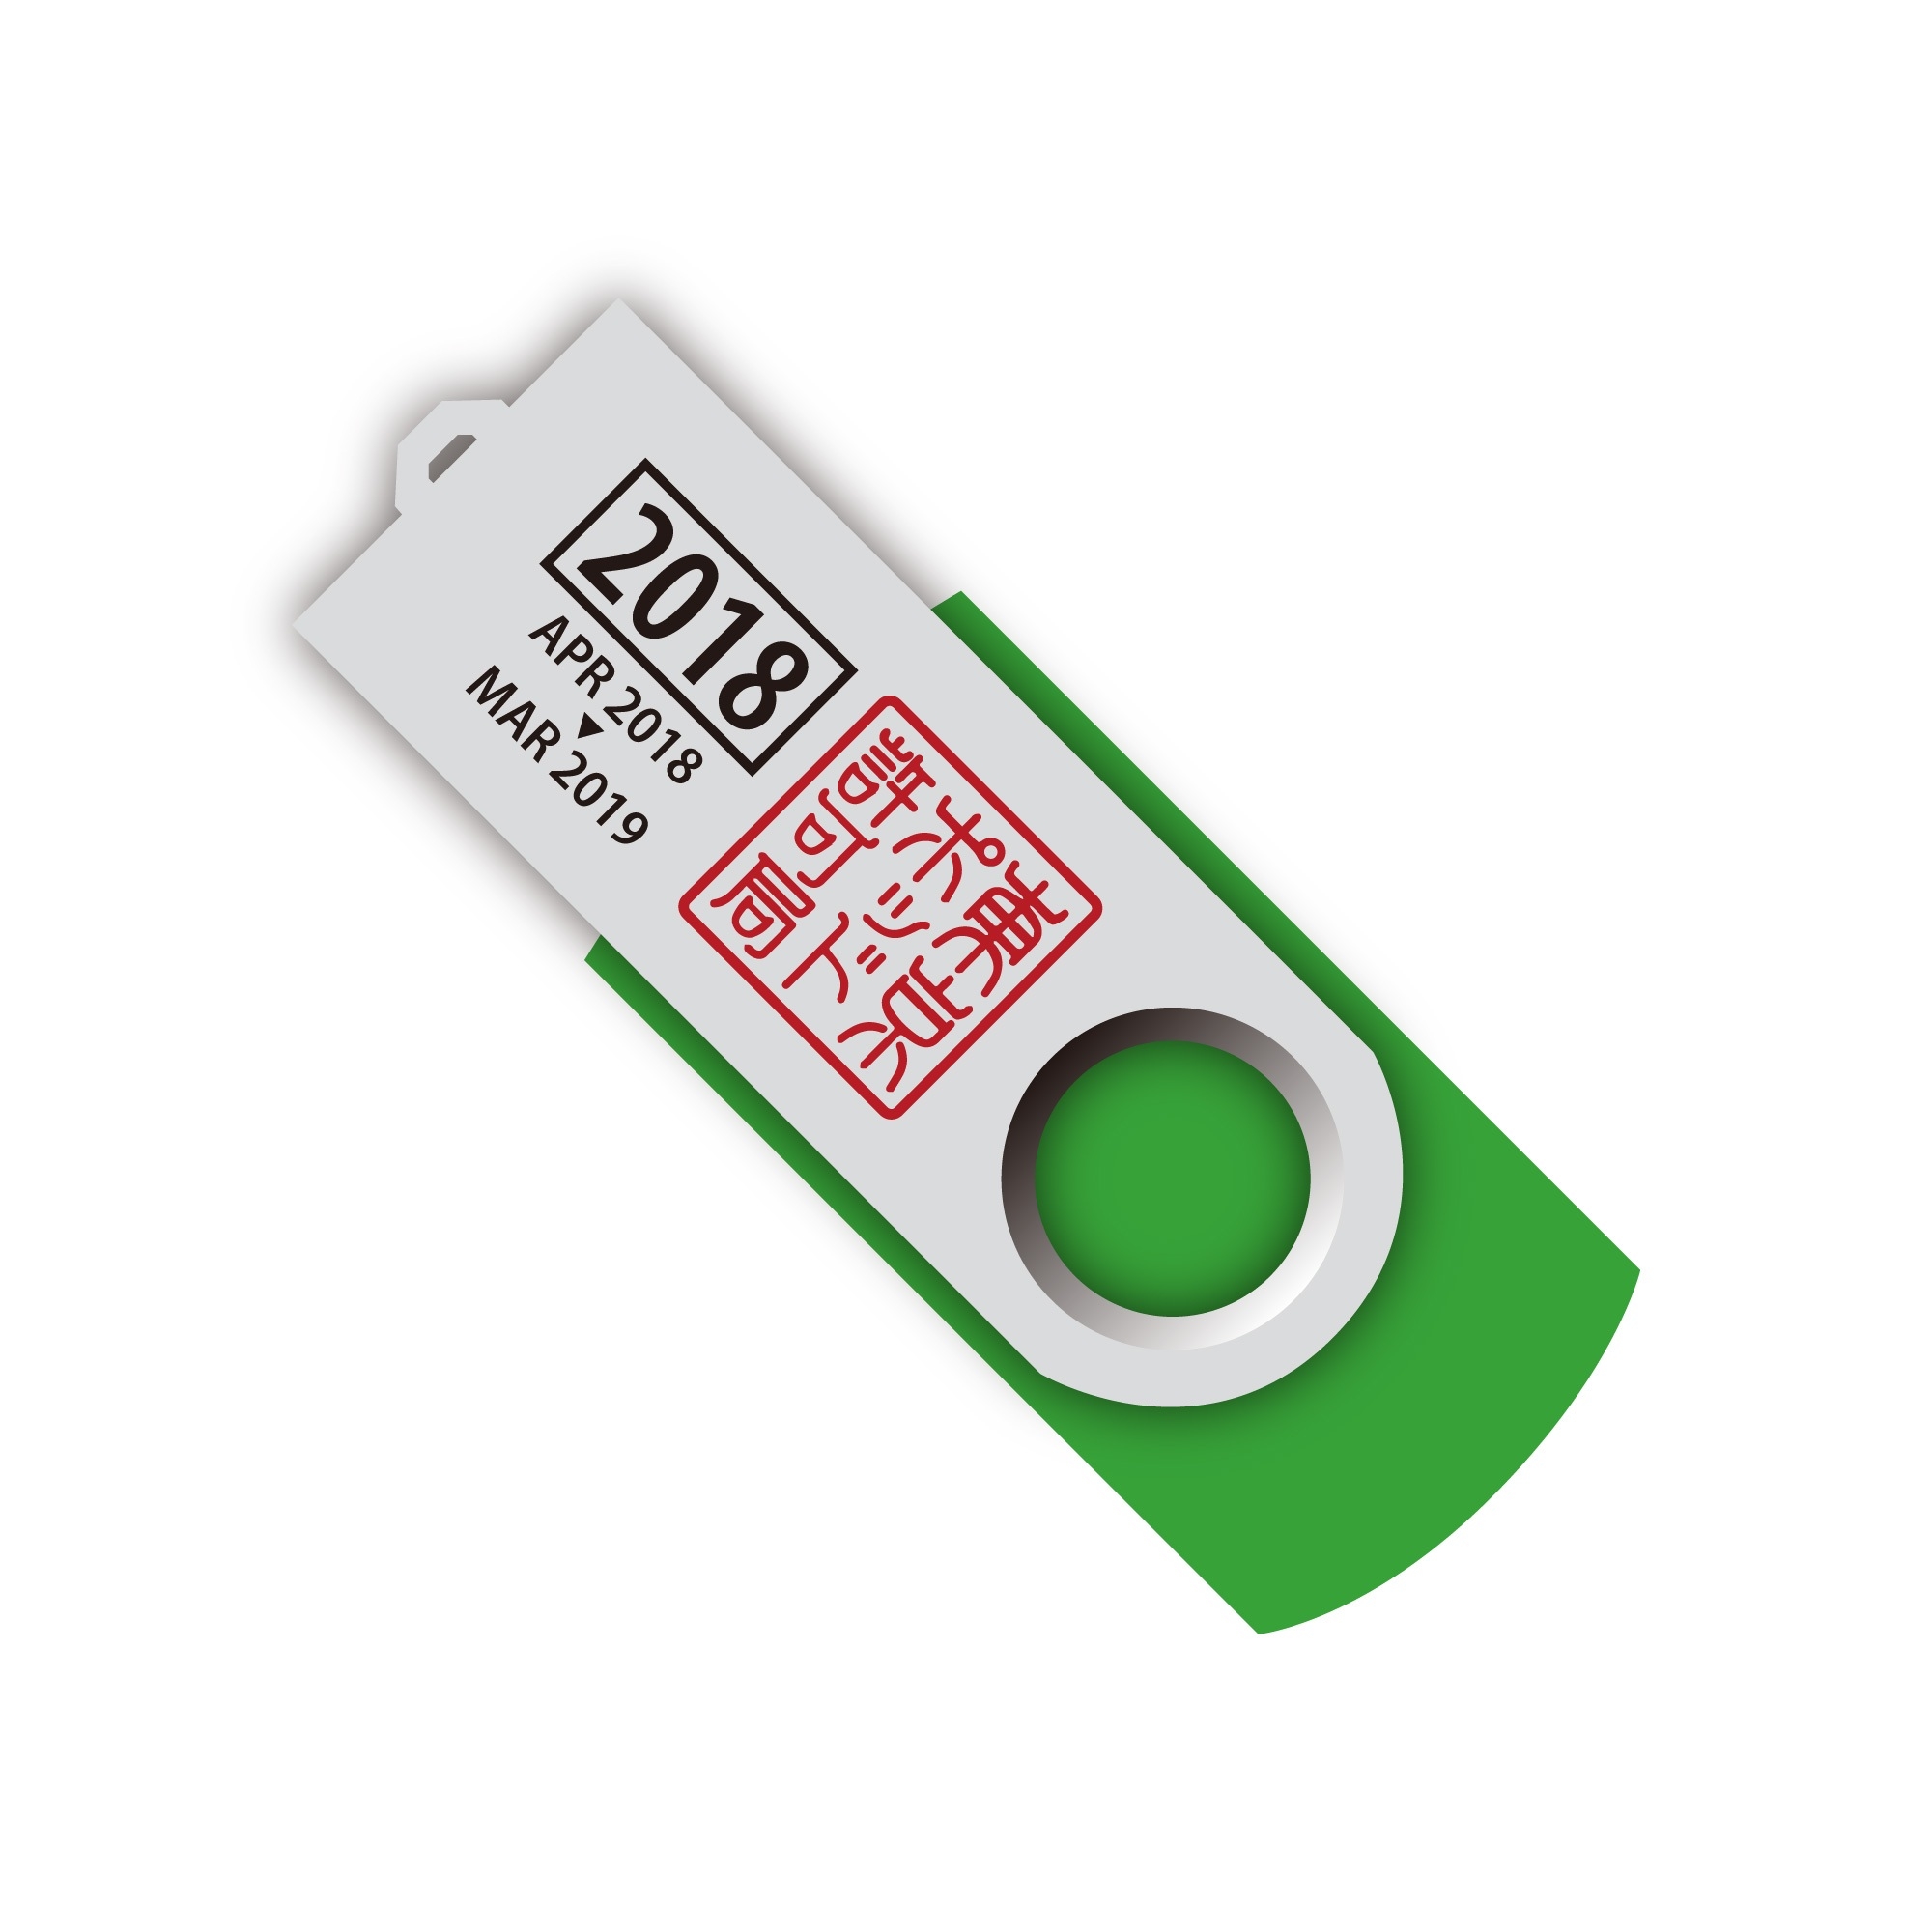 東京ポッド許可局の過去音源収録USBメモリ2015〜2018